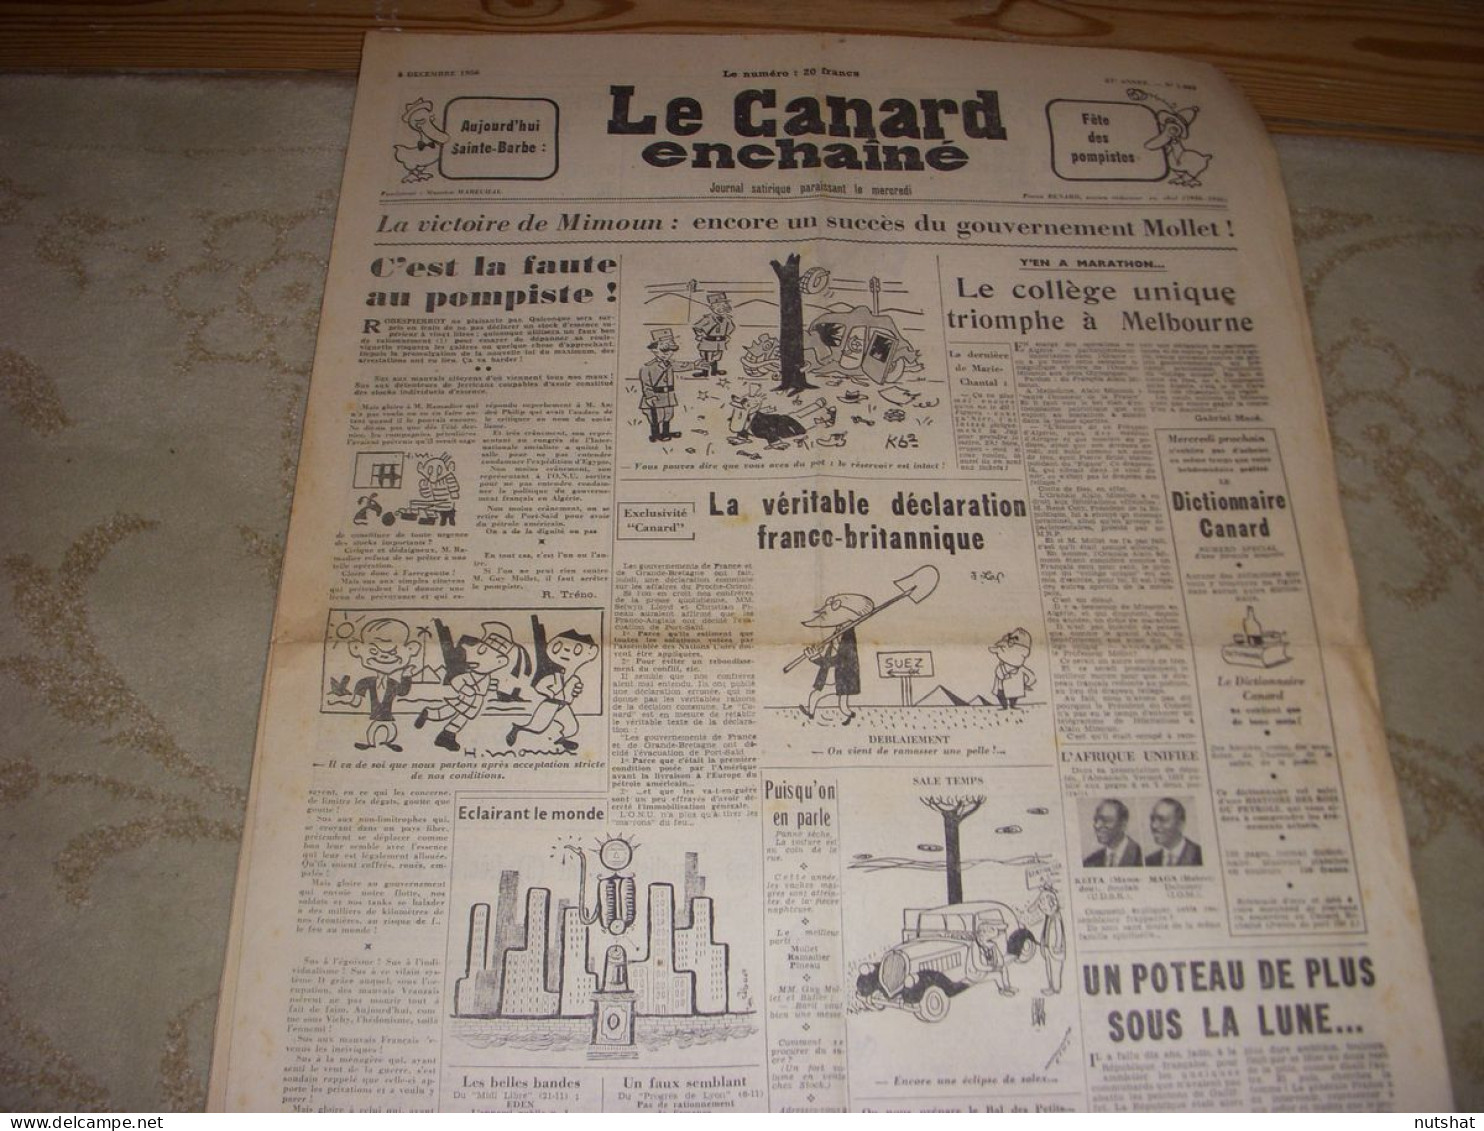 CANARD ENCHAINE 1885 05.12.1956 JO MELBOURNE MIMOUN La CHANSON FRANCAISE - Politics